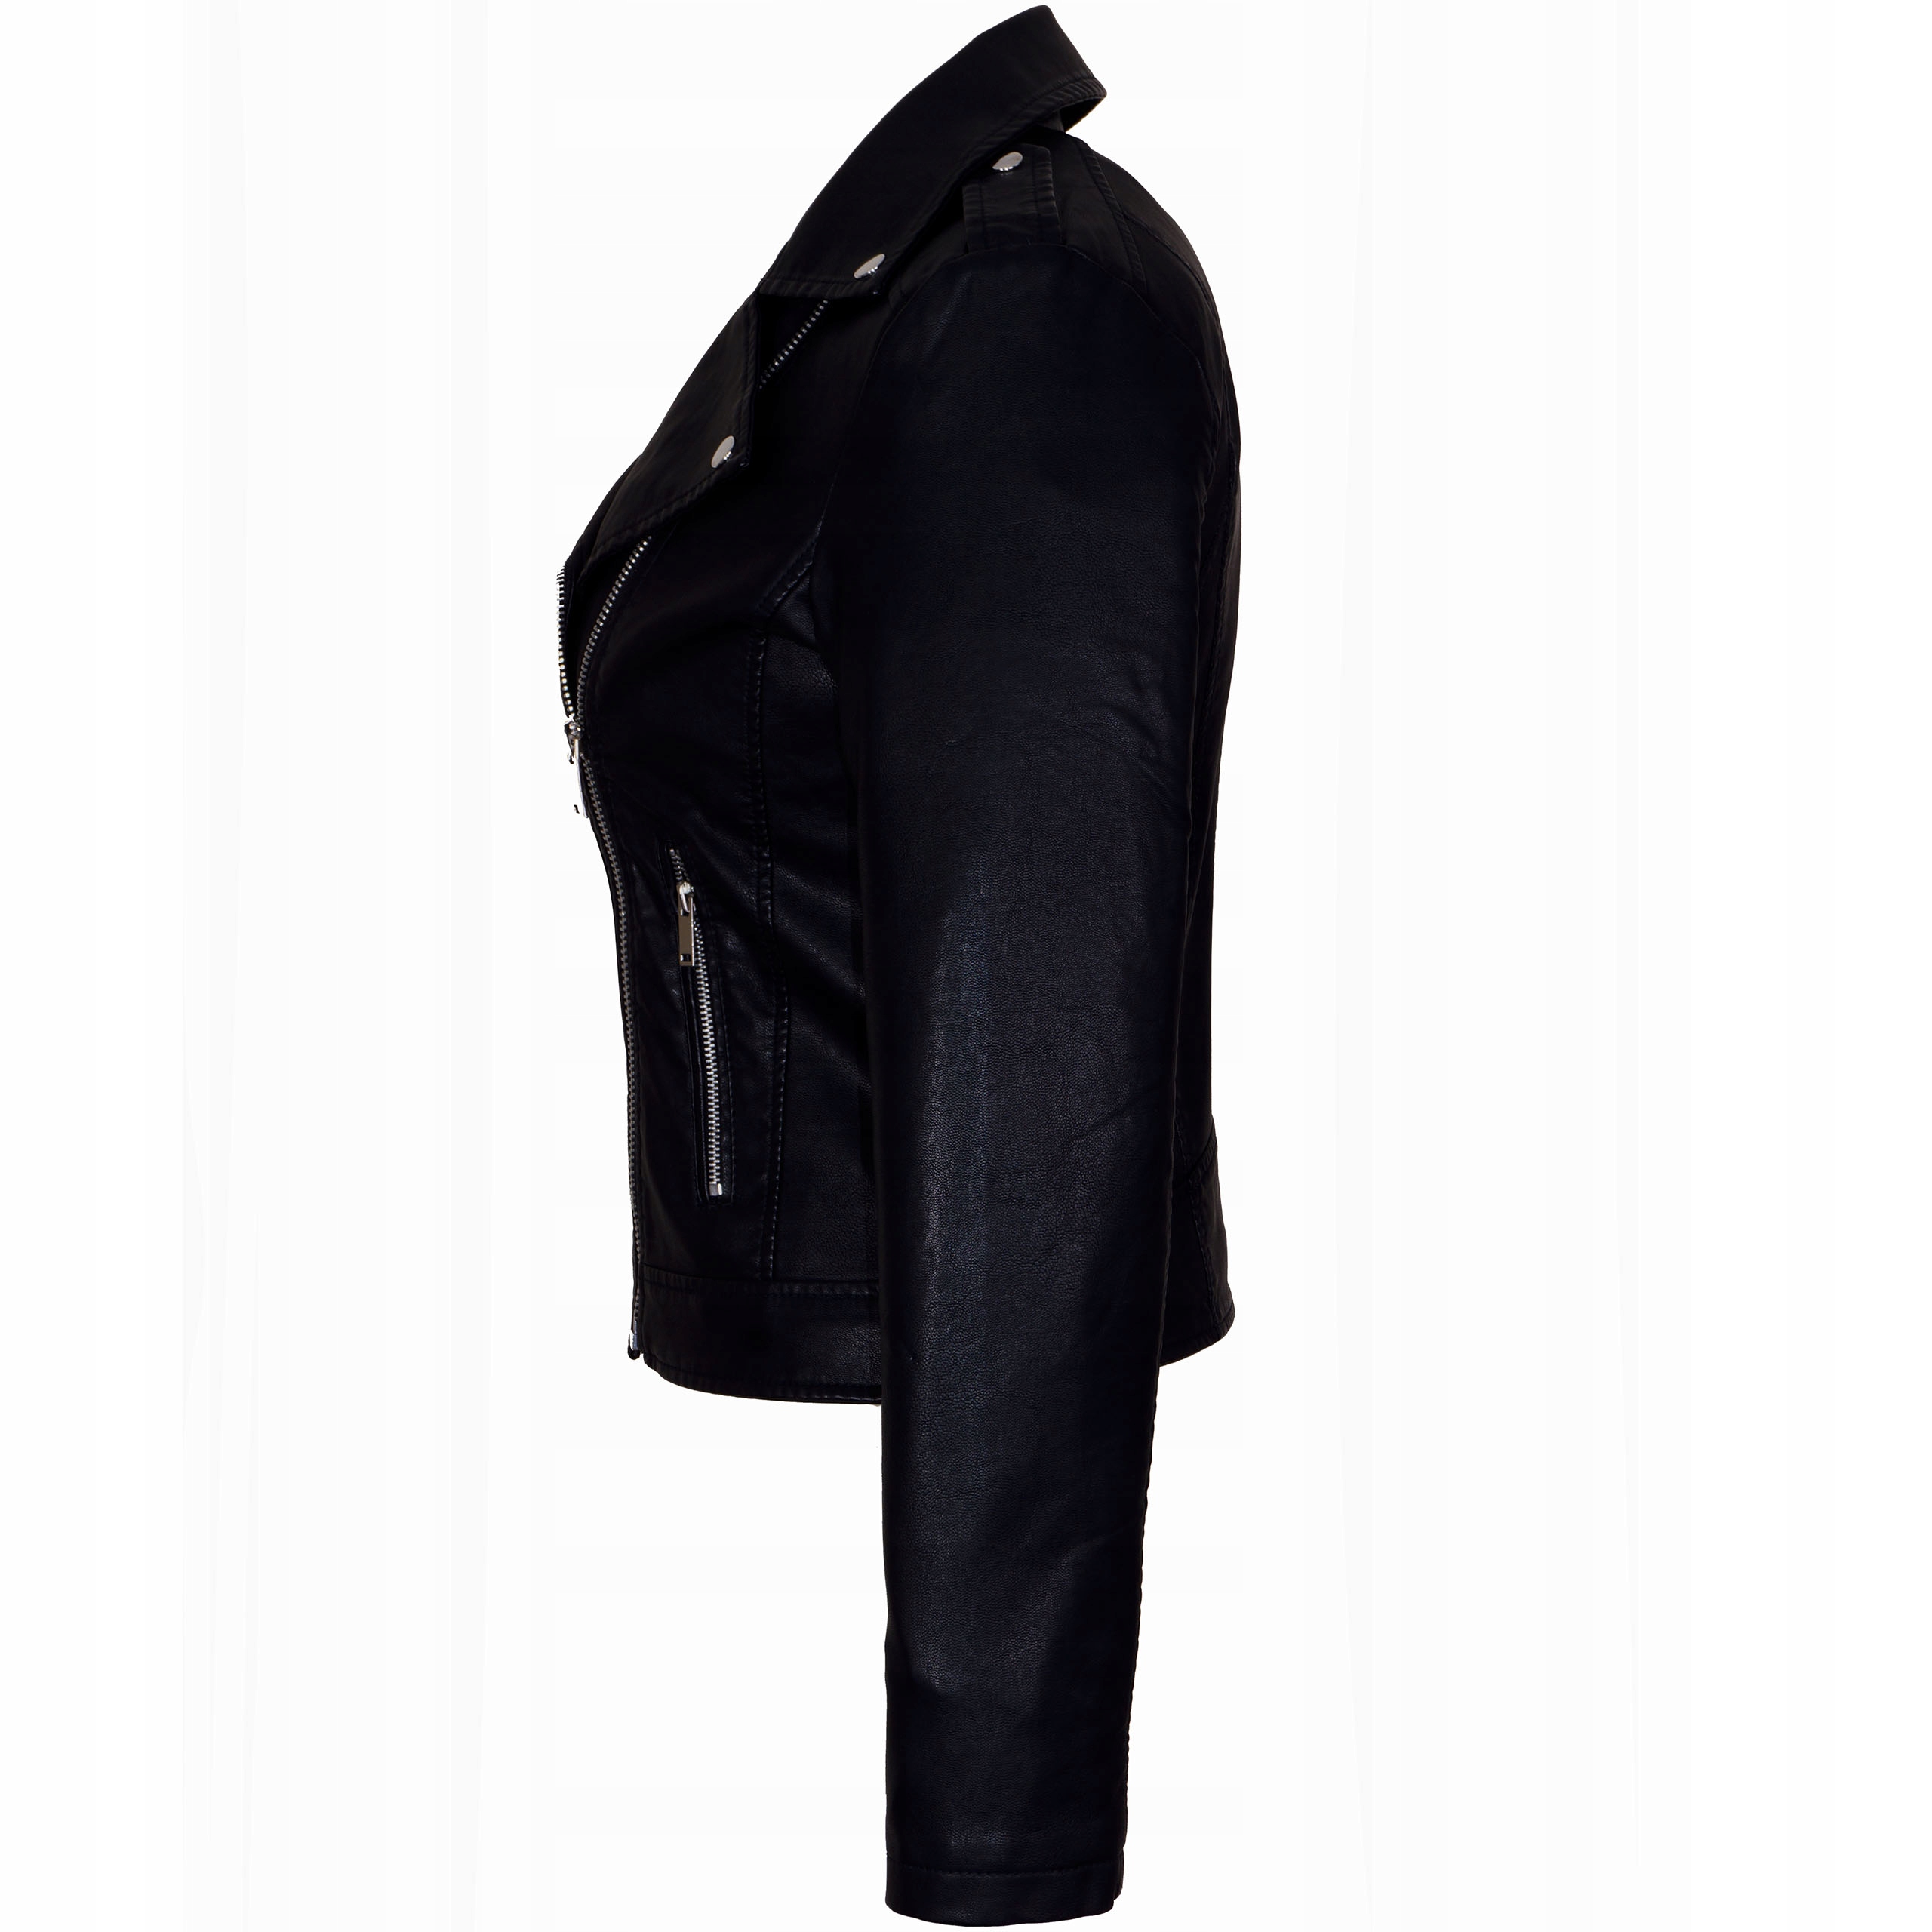 Классическая куртка RAMONESKA эко кожа 42/44 XL / 2XL размер XL / XXL